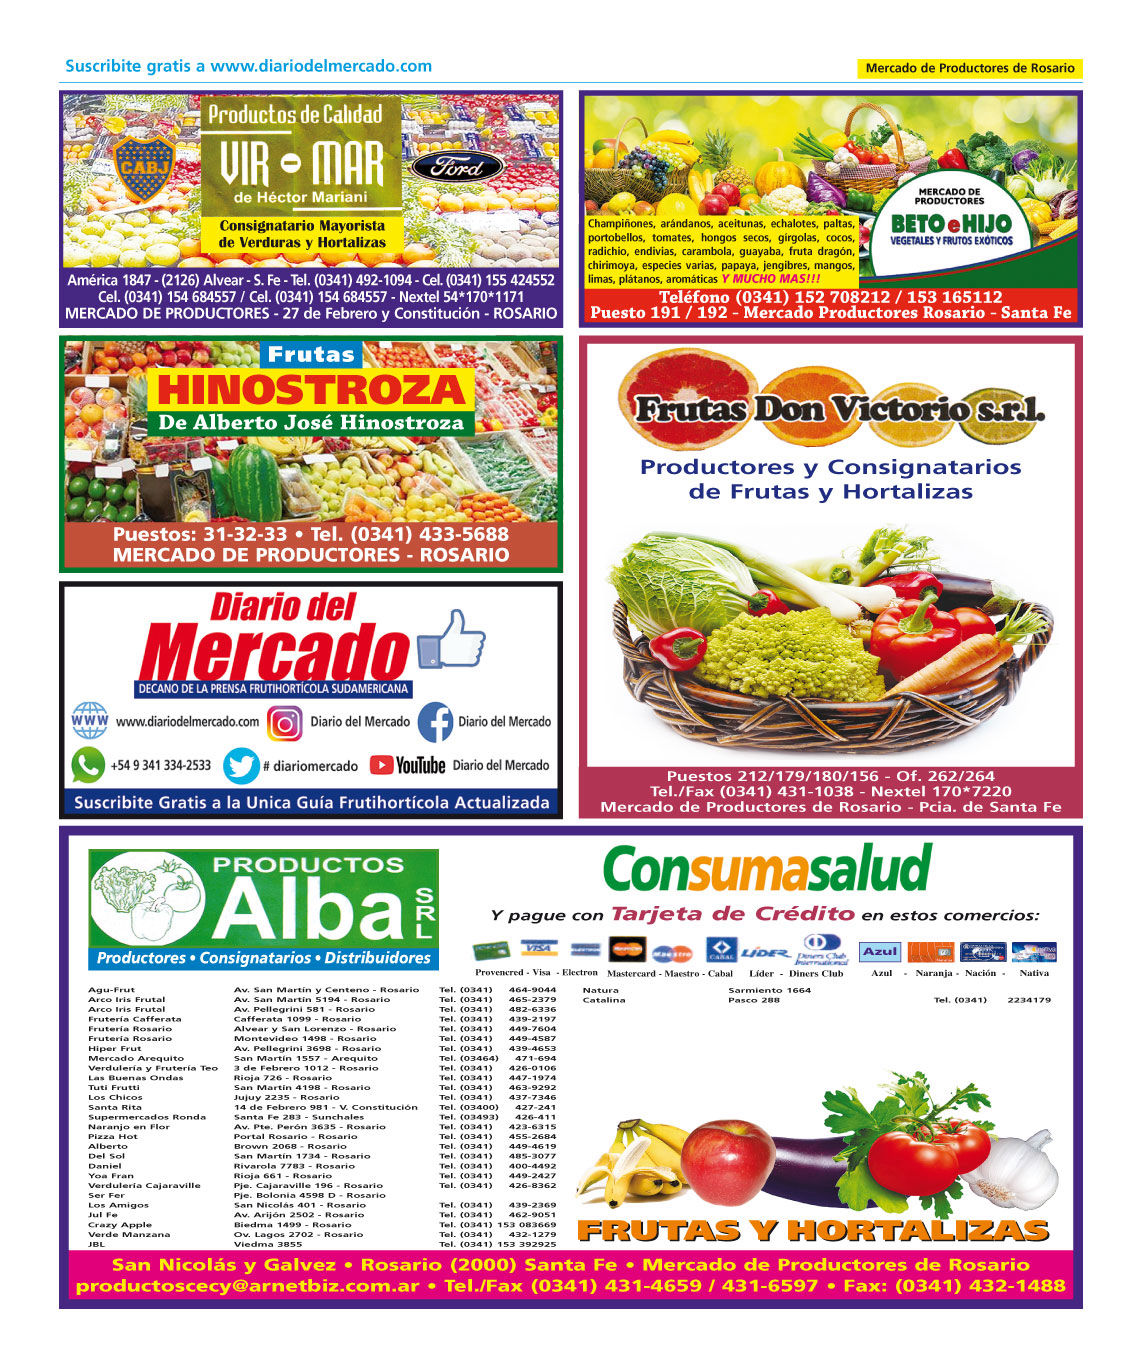 Diario del Mercado Digital